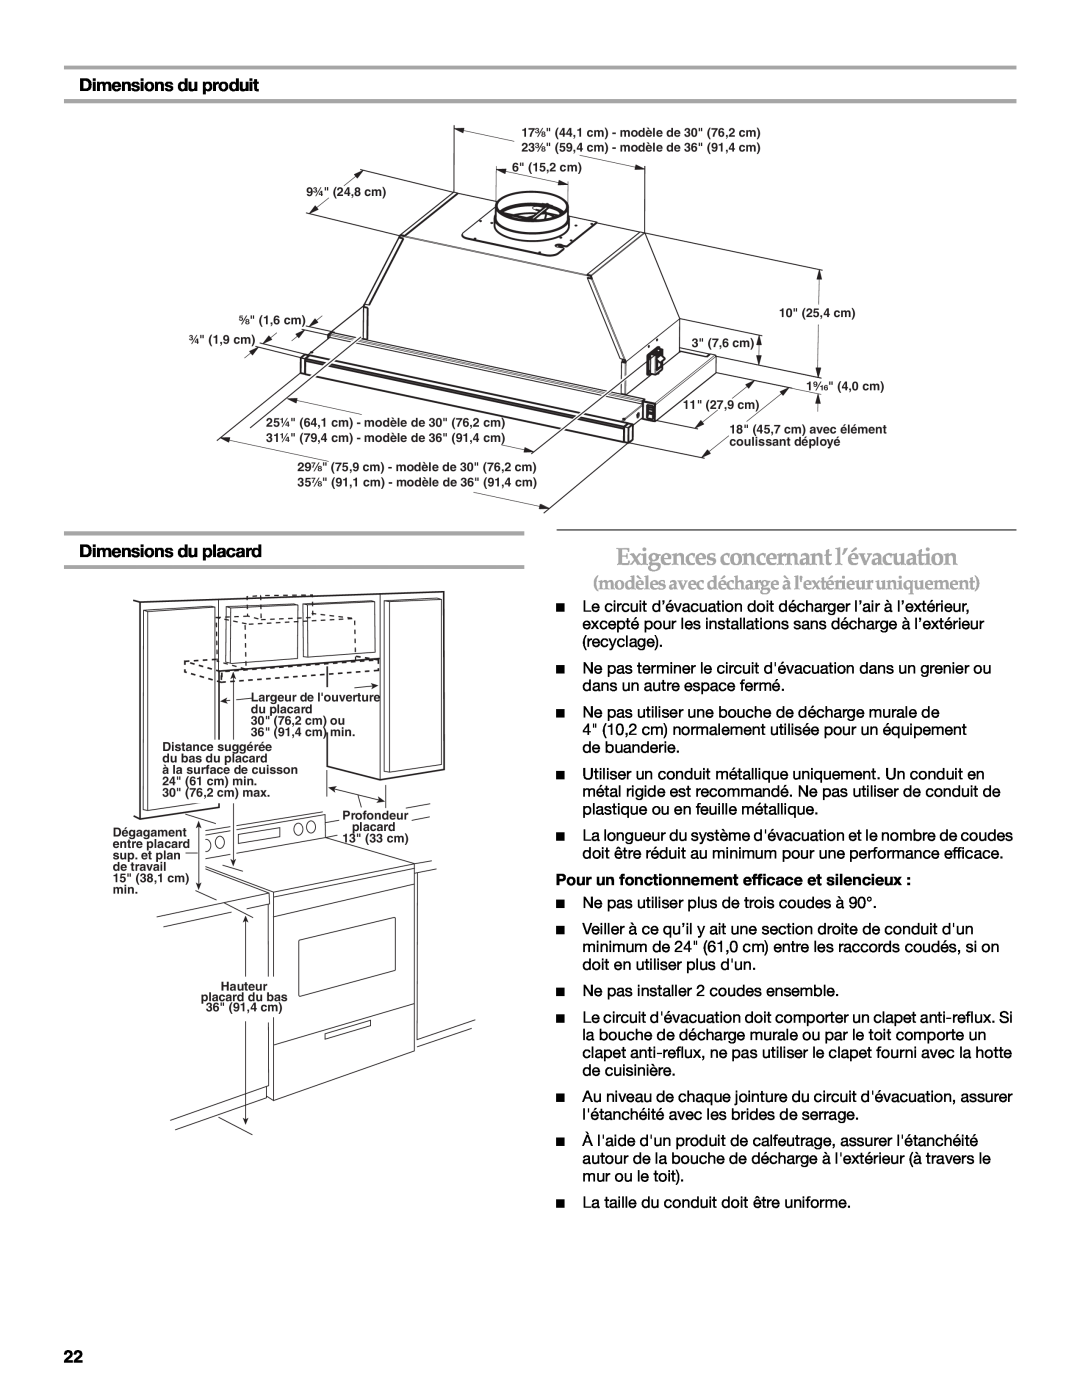 KitchenAid W10267109C Dimensions du produit, Pour un fonctionnement efficace et silencieux, Dimensions du placard 